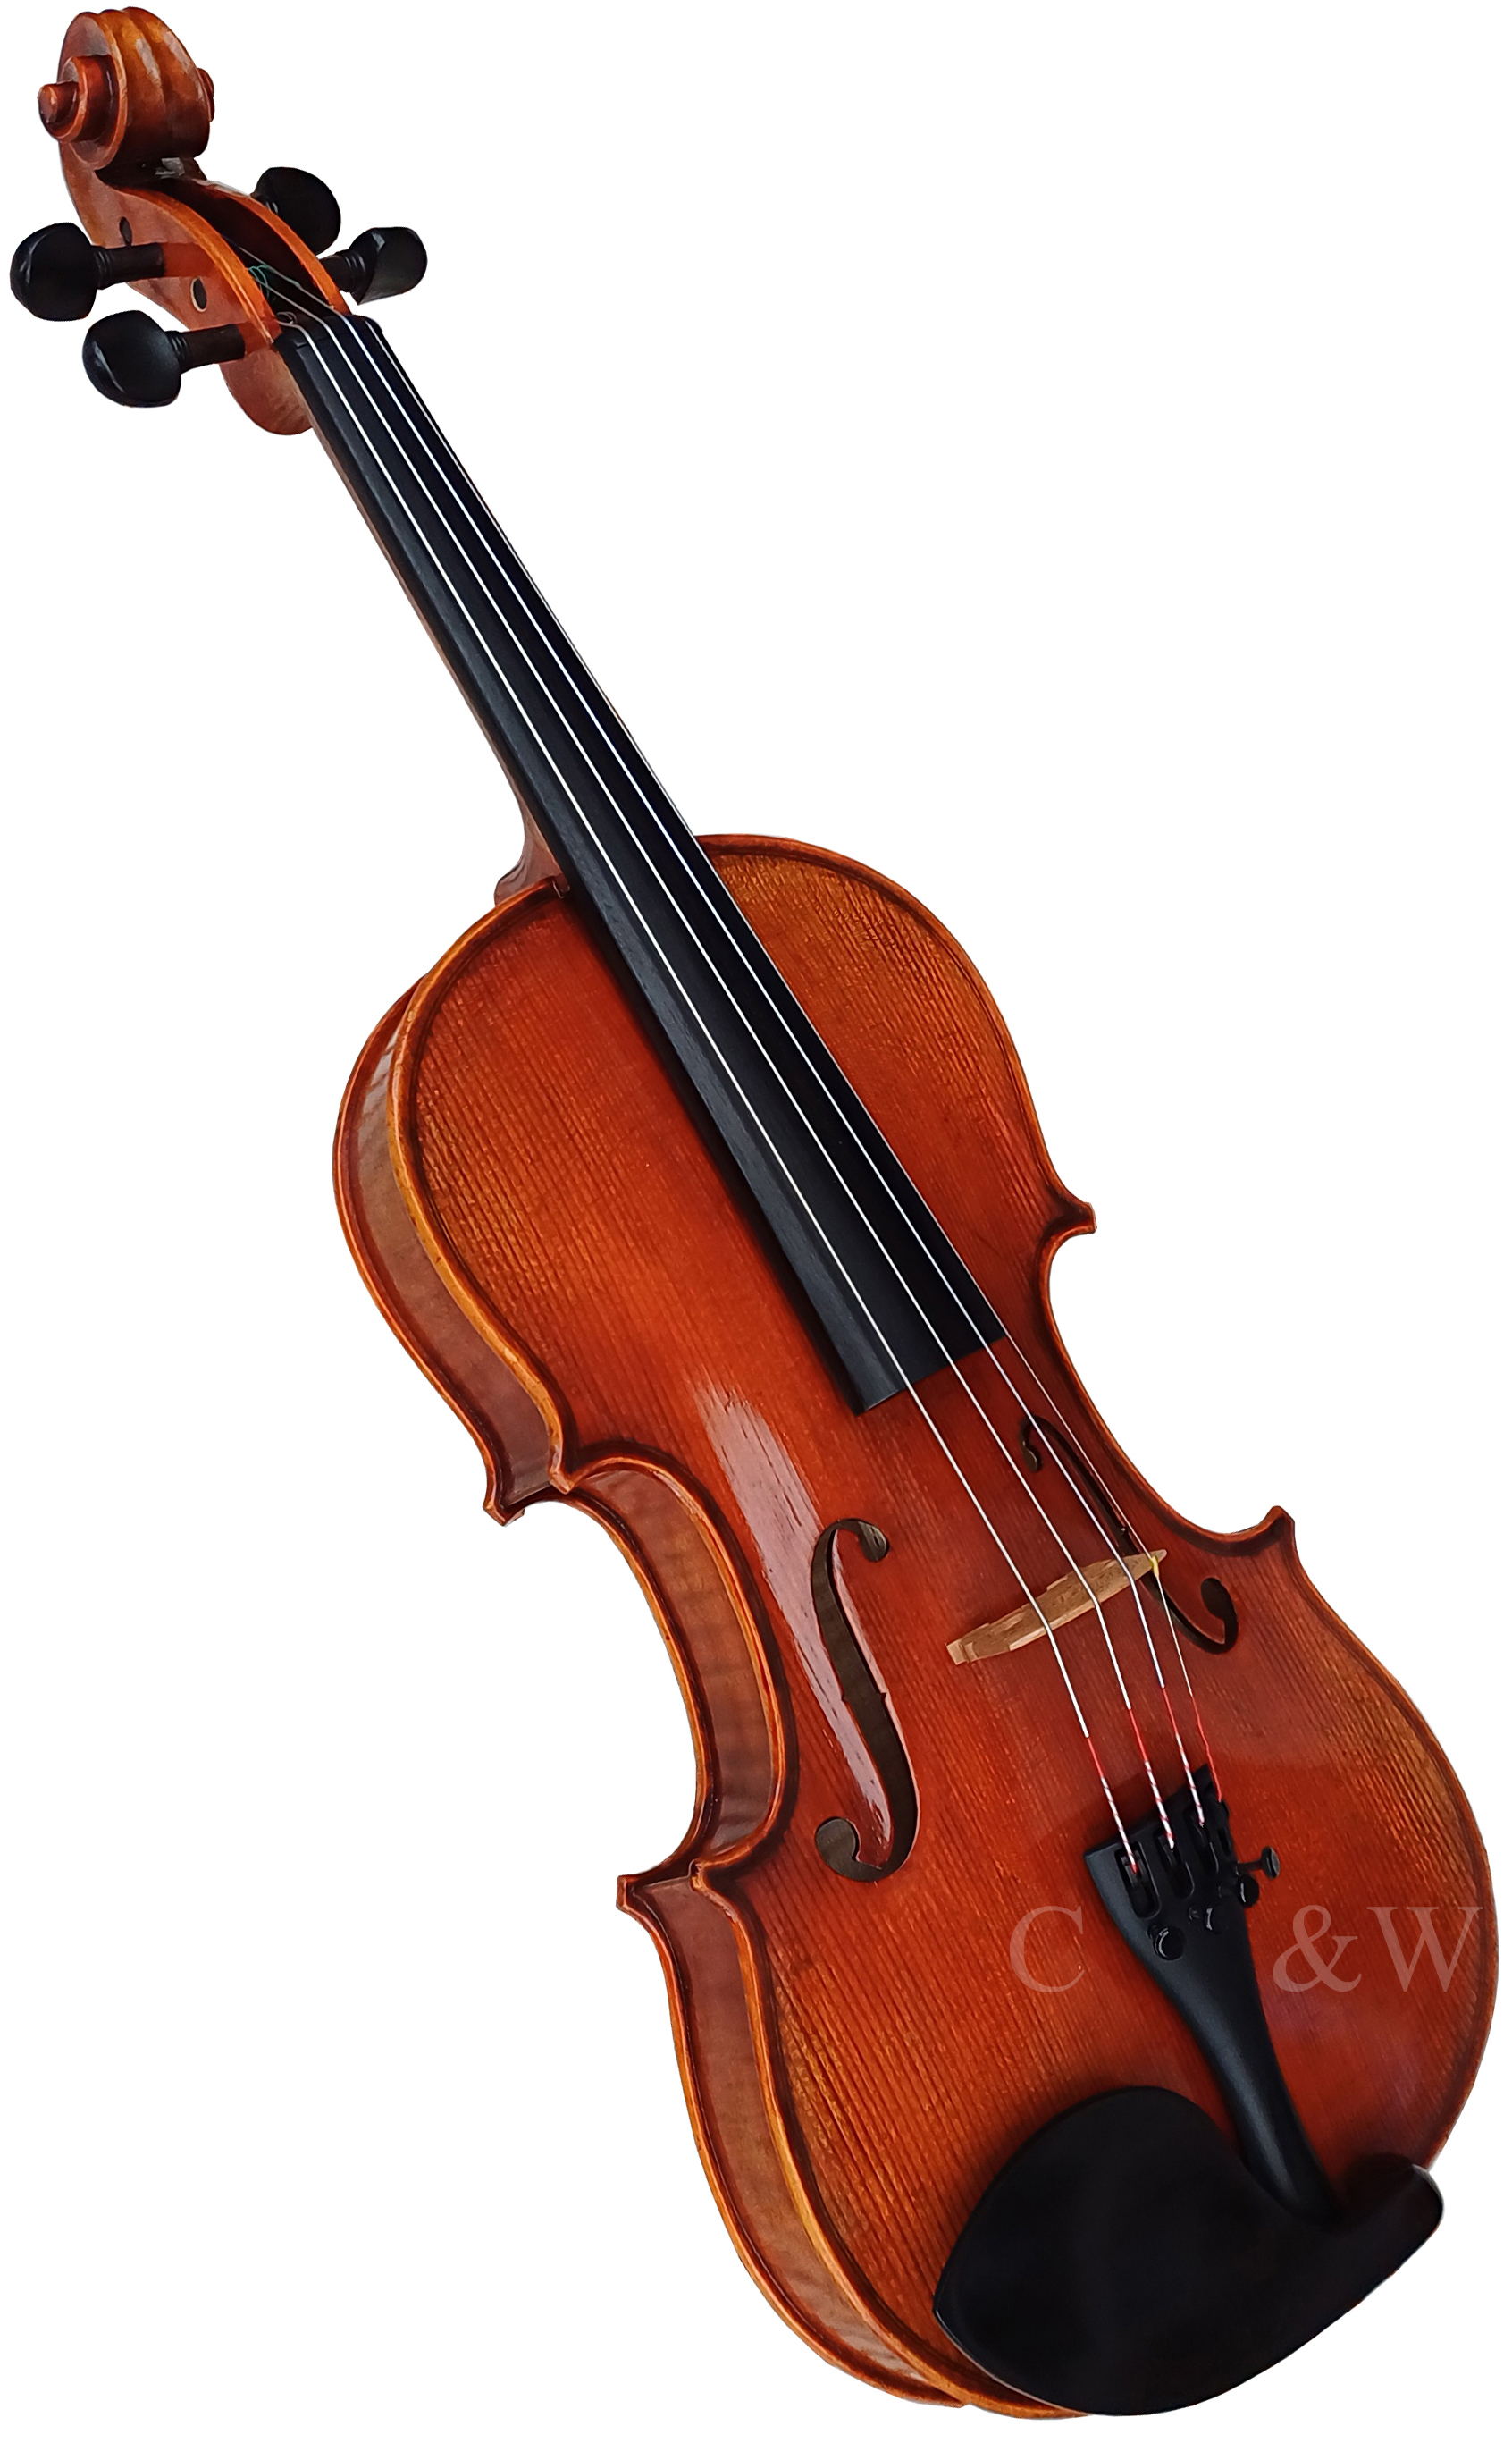 Eastman Master Series Violin 